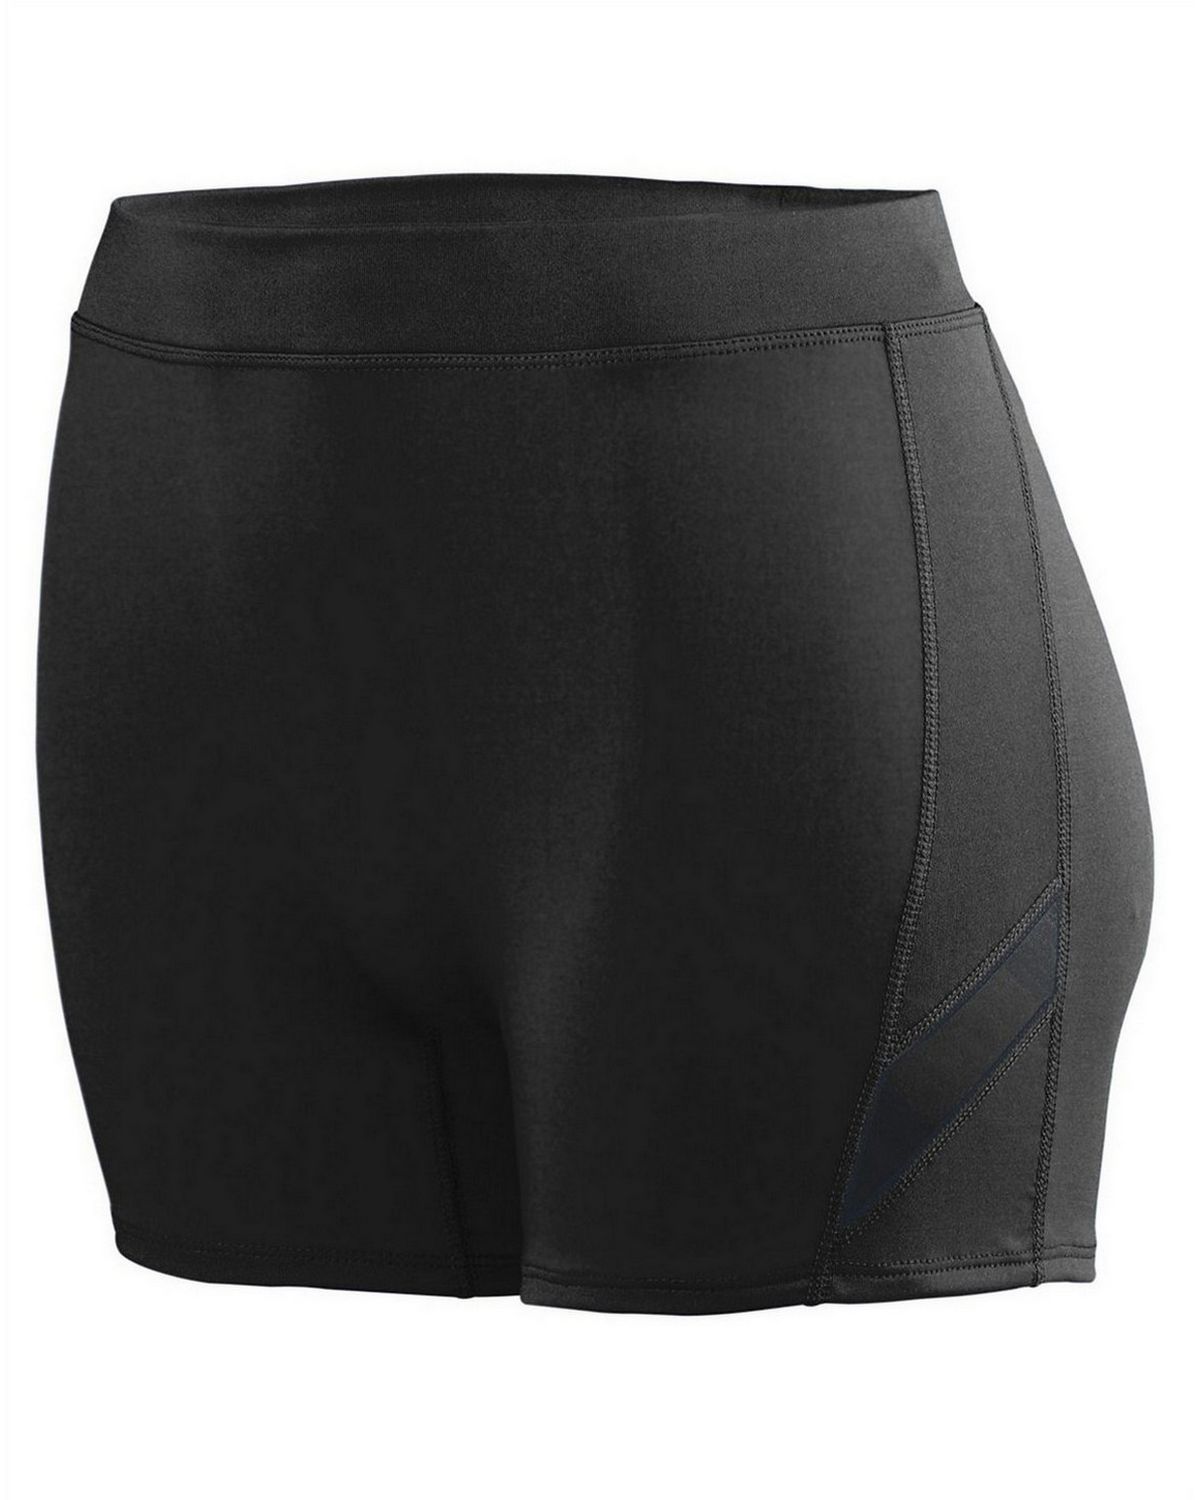 Augusta Sportswear 1335 Women's Wicking Poly/Span Short